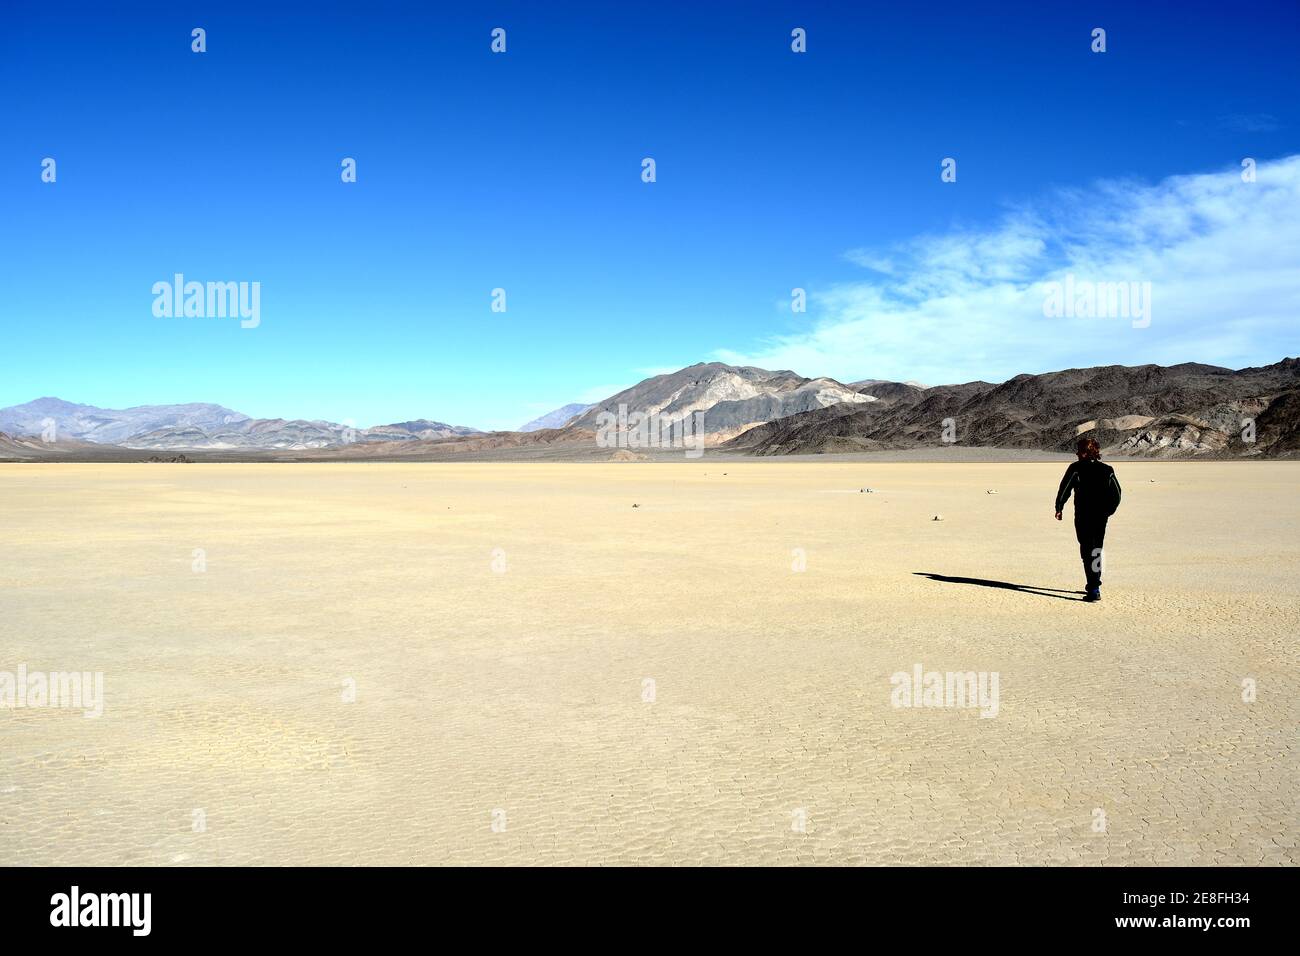 Einzelperson steht auf der Rennstrecke Playa im Death Valley Nationalpark - ein Mann erforscht die Segelsteine, ein Phänomen in der Wüste, Stockfoto